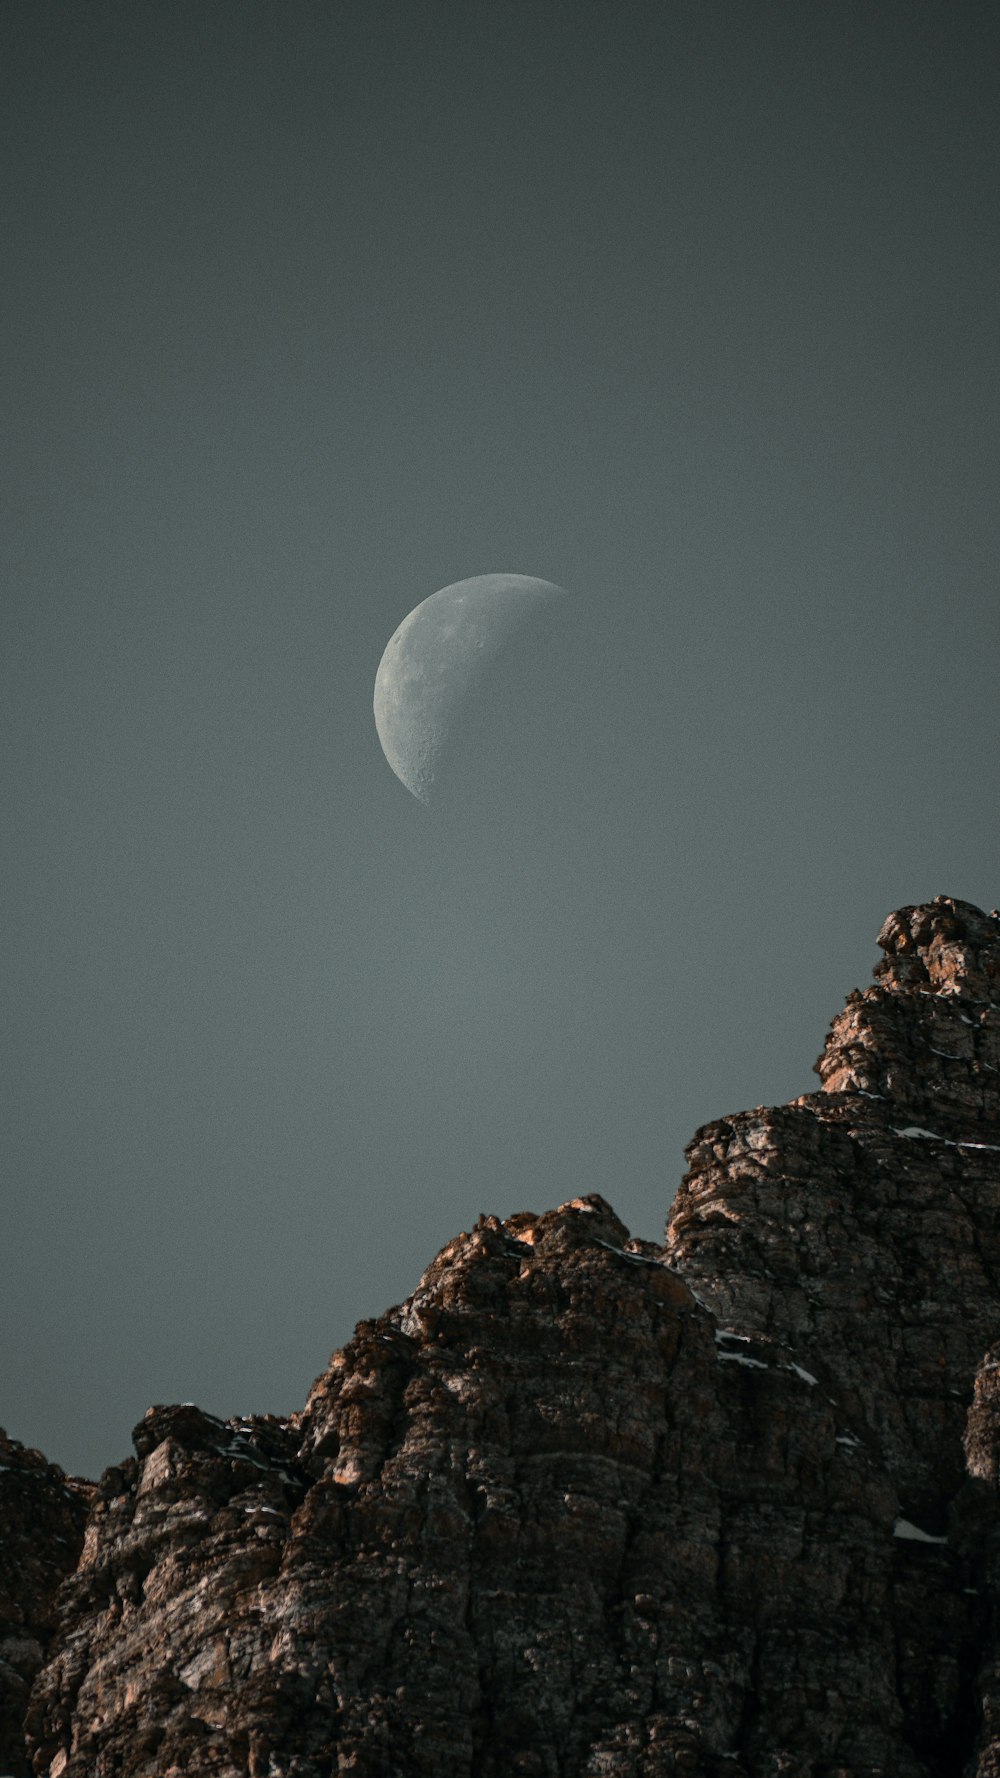 Se ve una media luna sobre una montaña rocosa